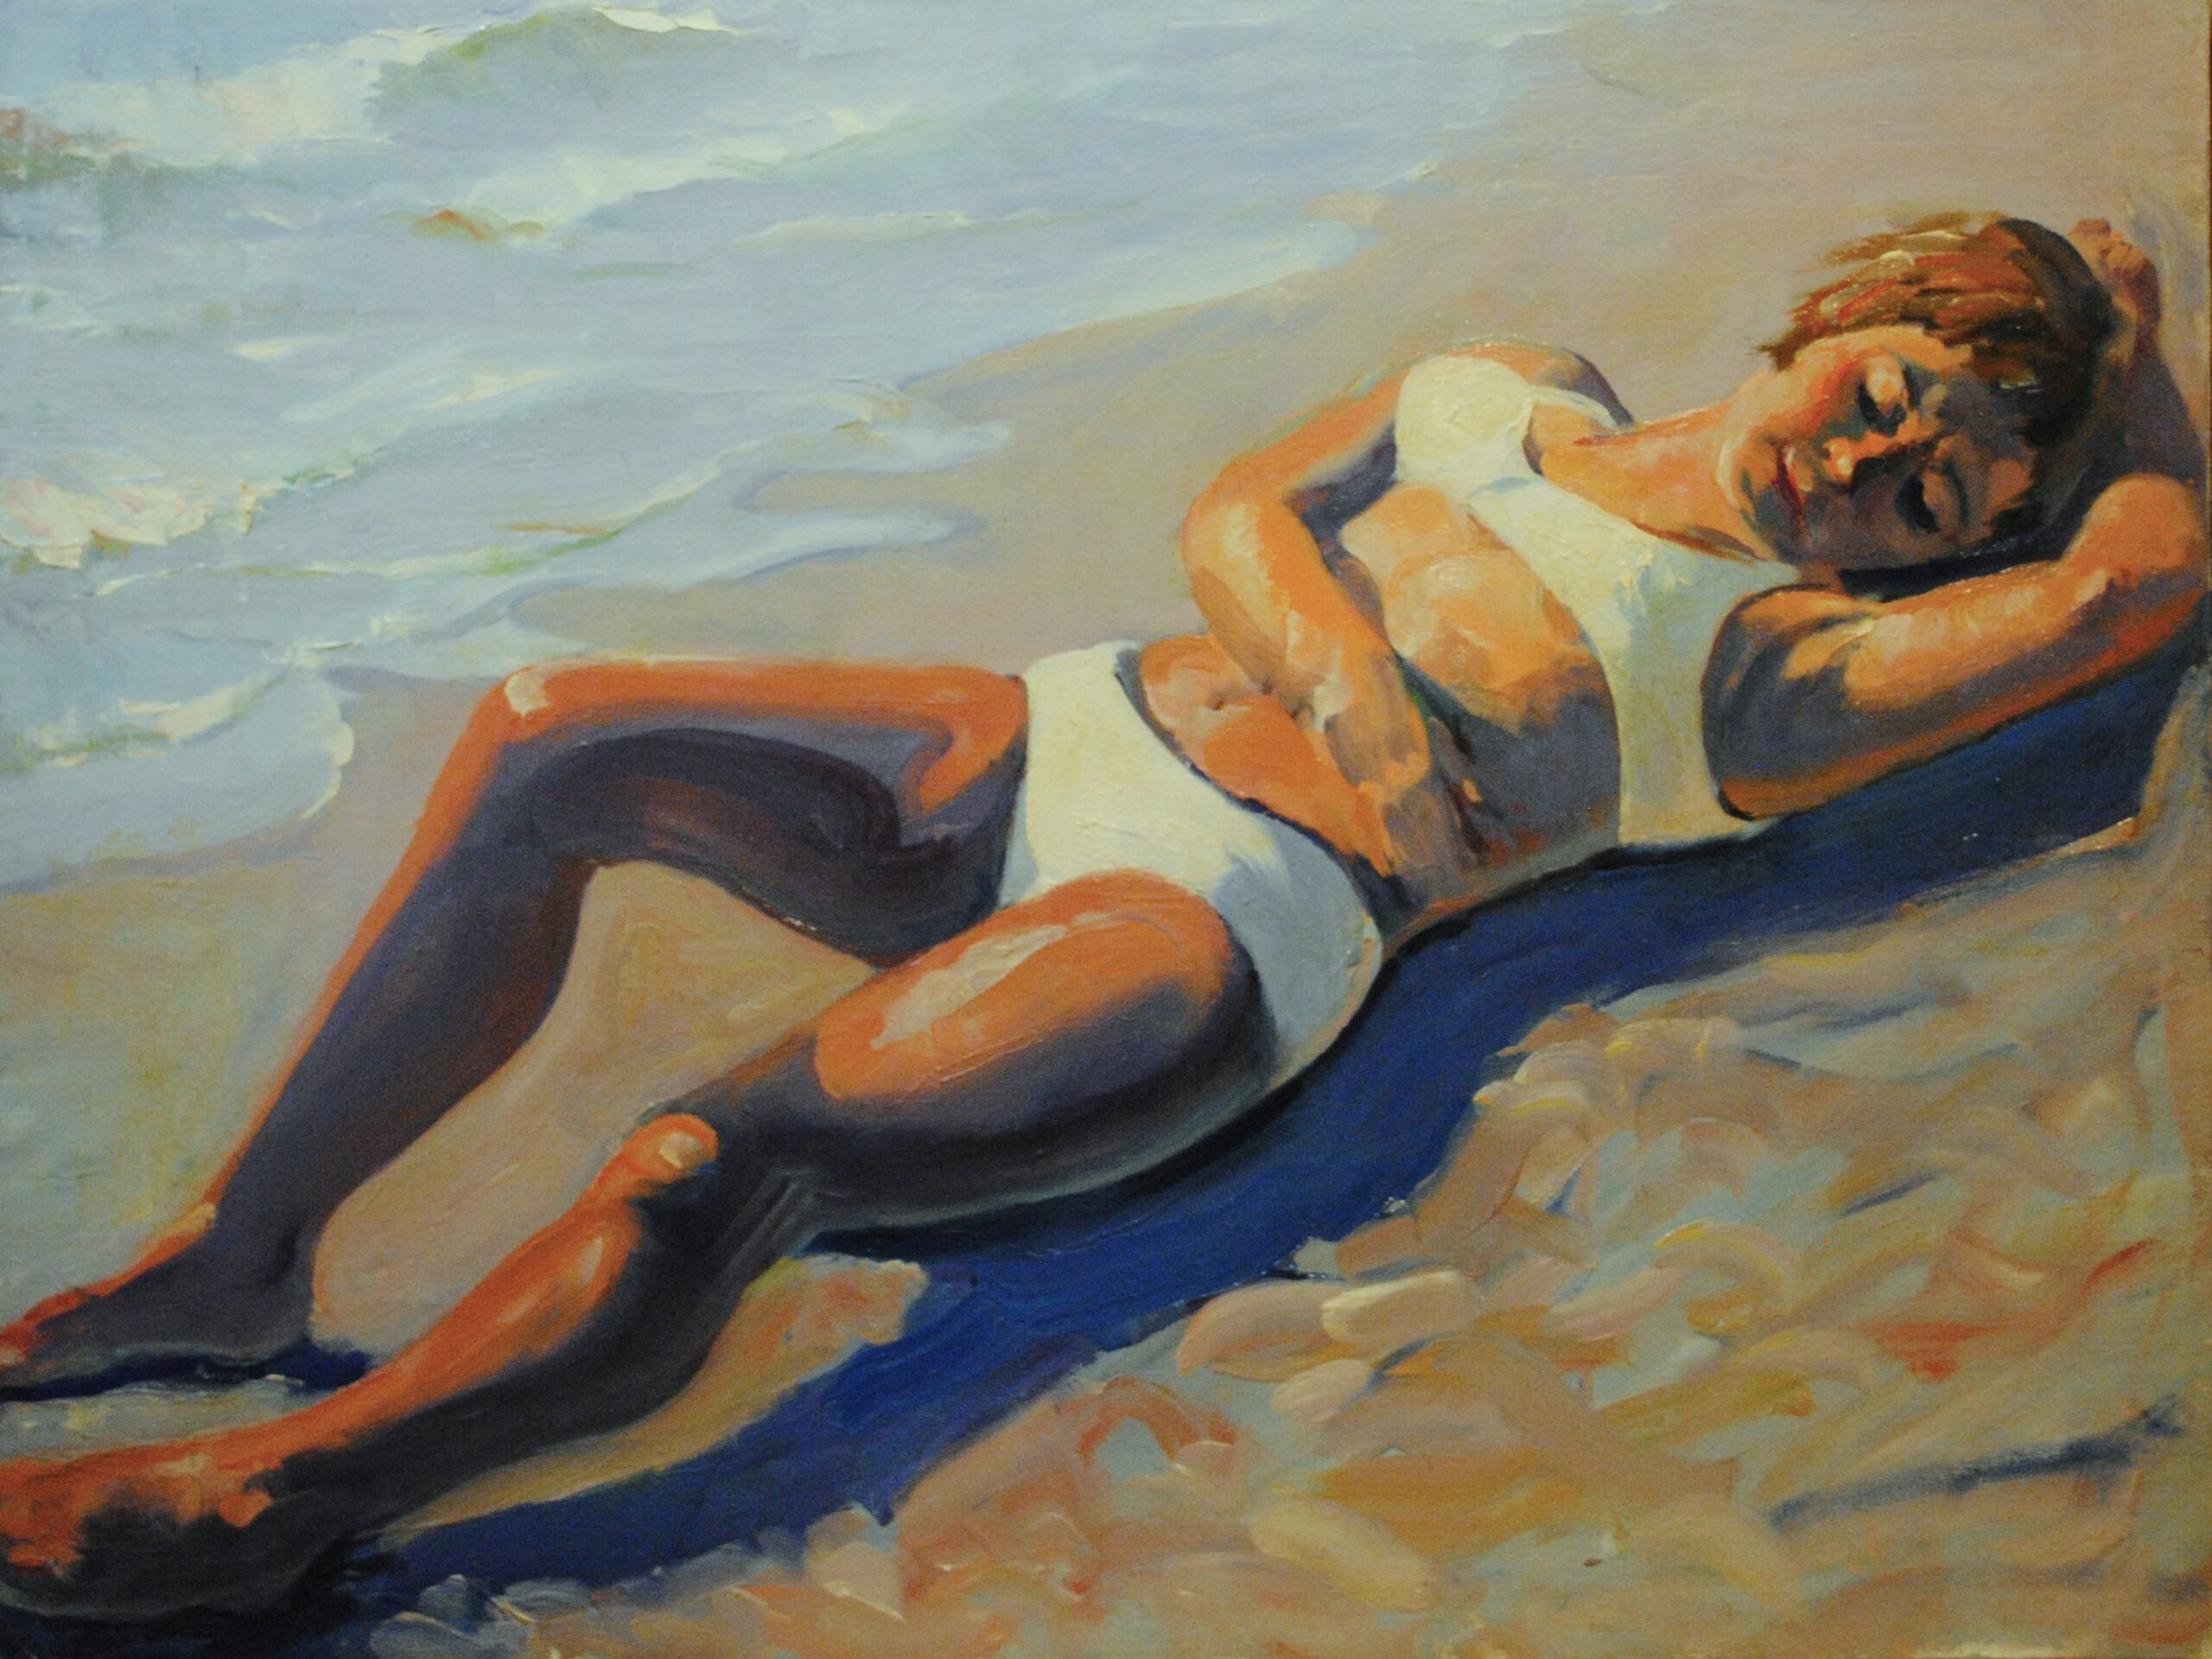 Pintura de José Manaut titulada Mujer al sol, 1970. Óleo sobre lienzo.